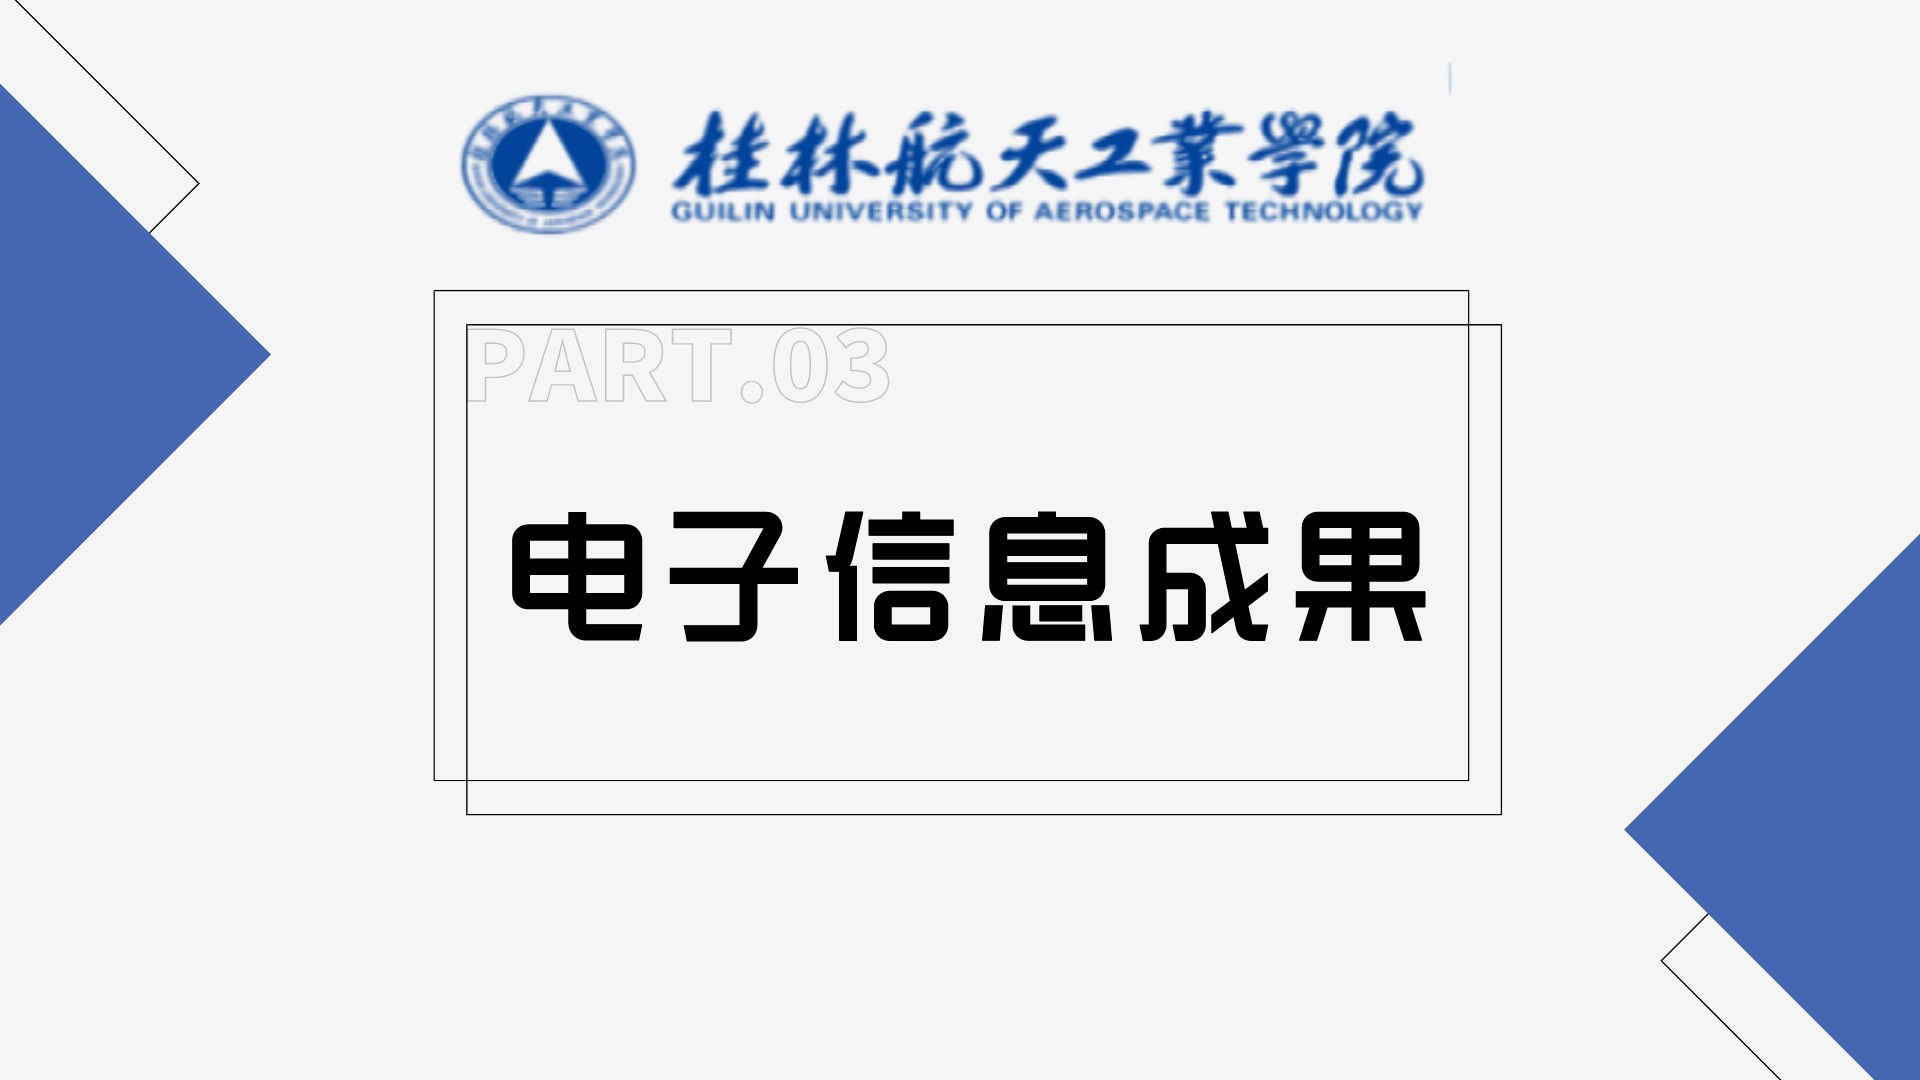 桂林航天工业学院——电子信息成果